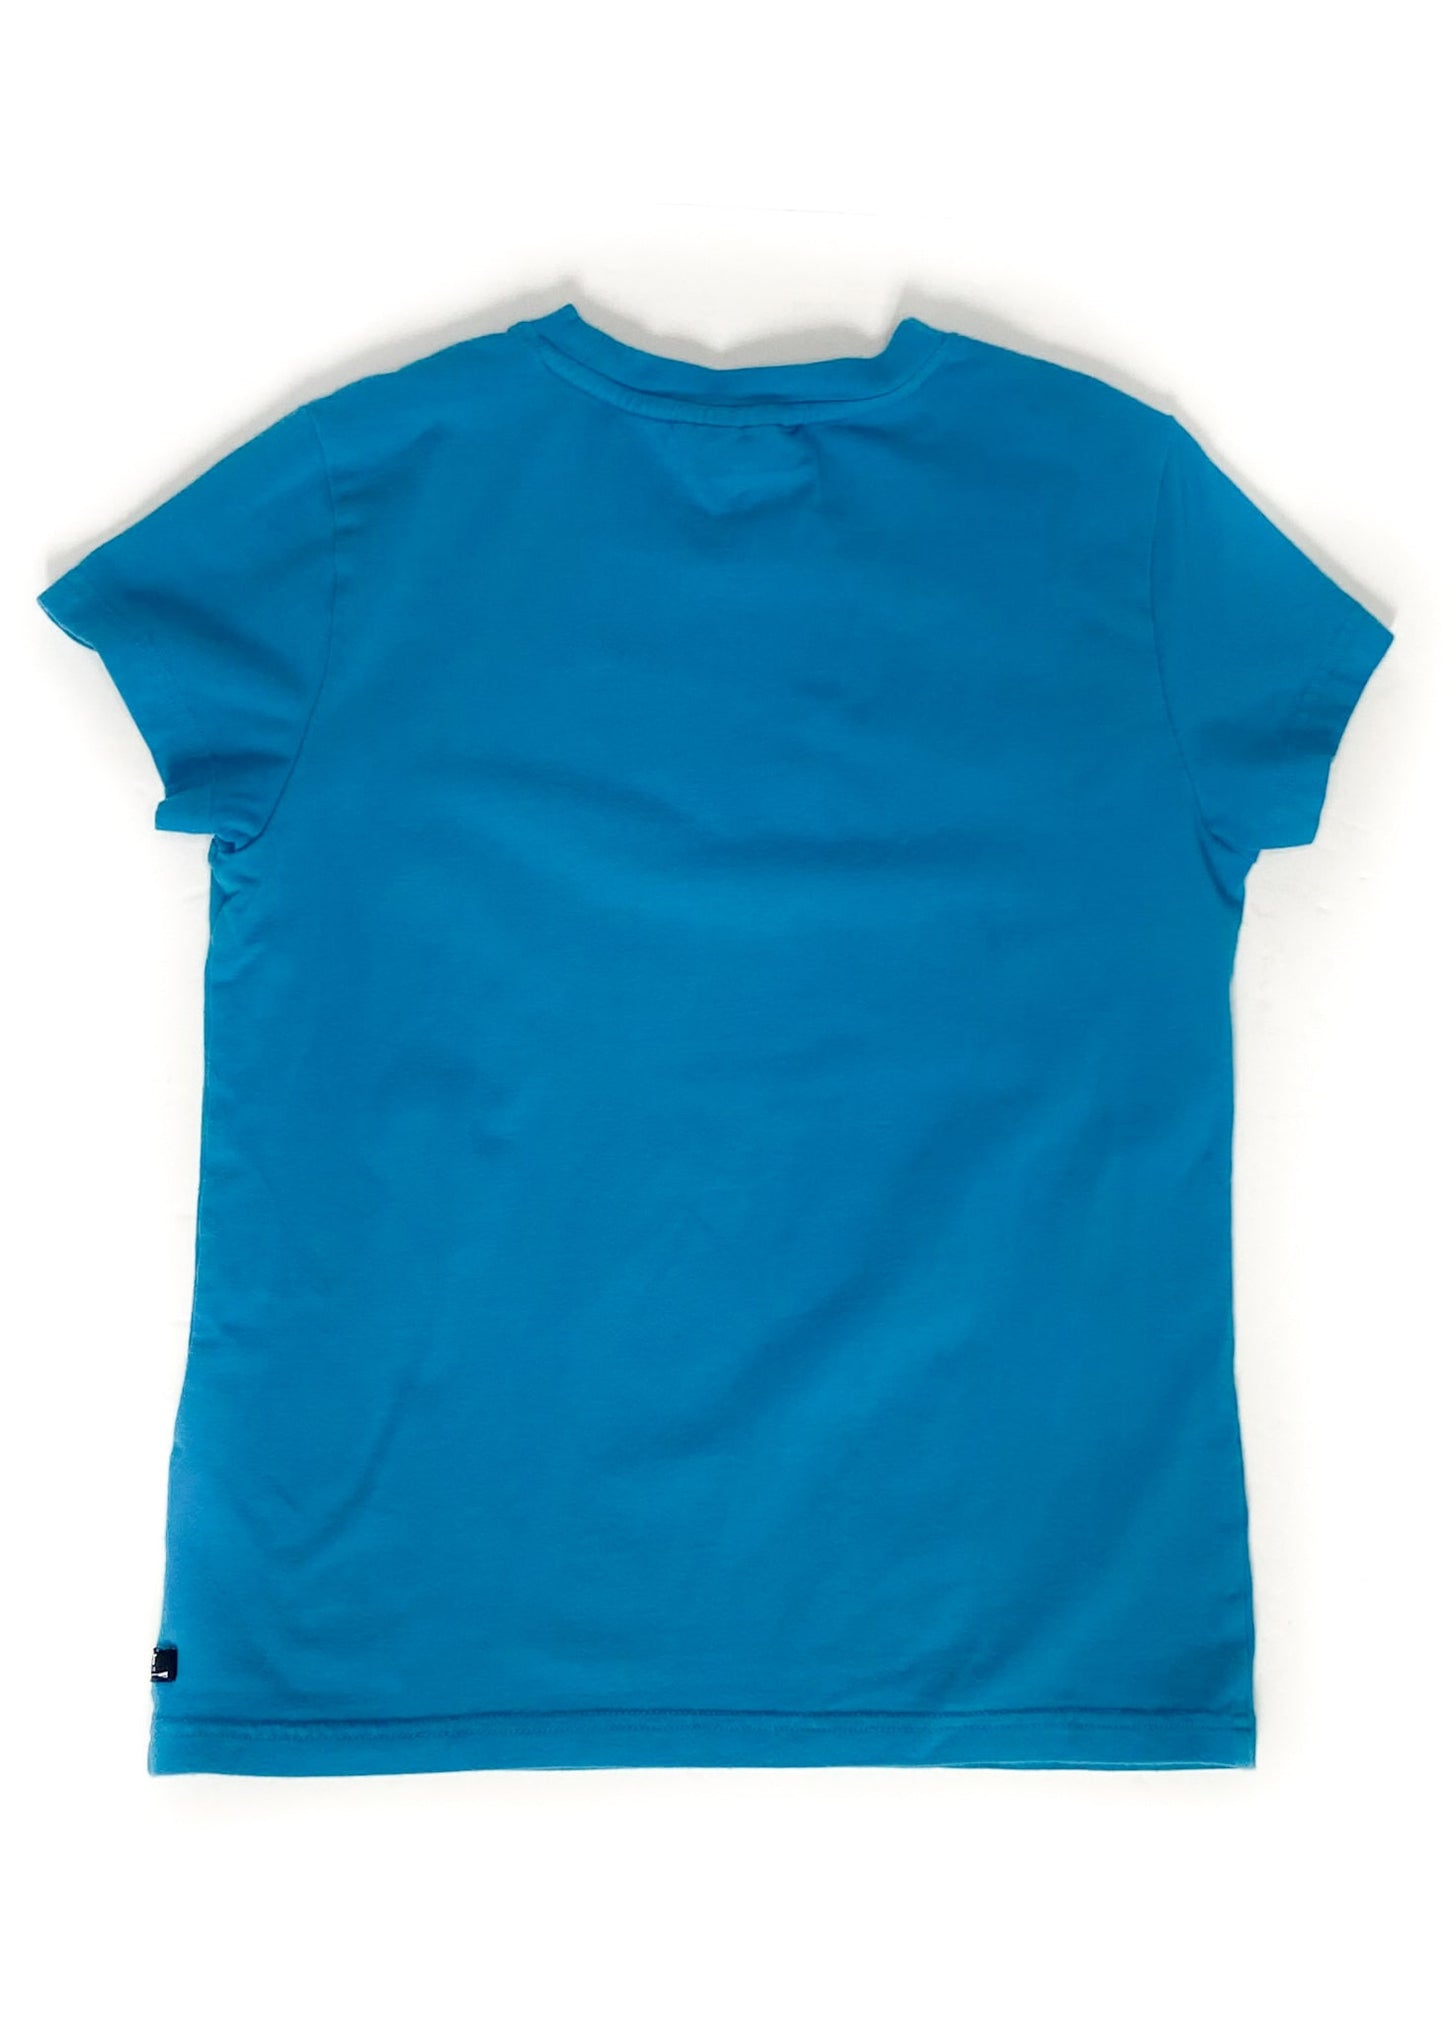 Ariat Short Sleeve Shirt - Blue - Youth Large